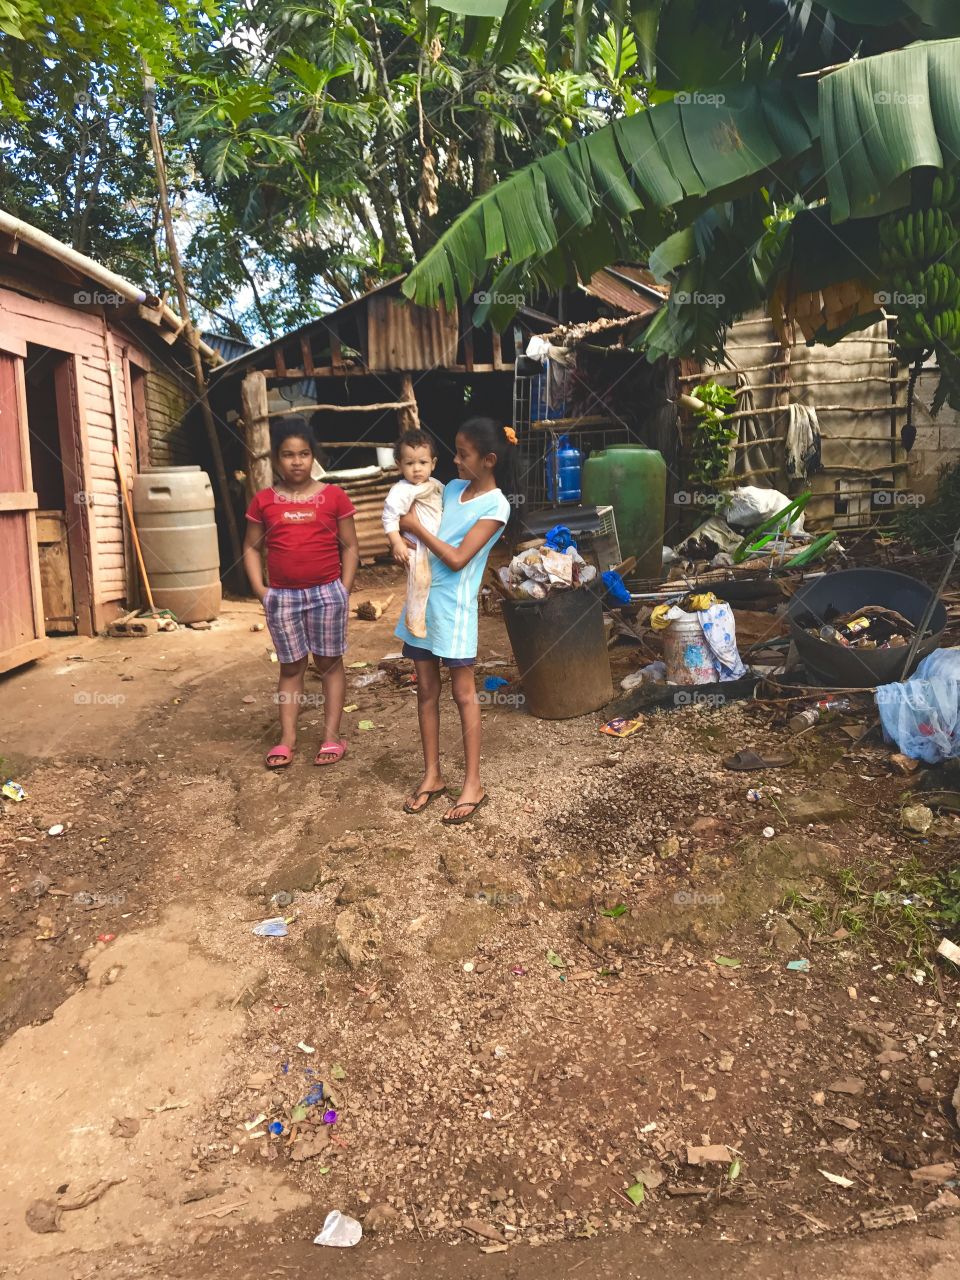 Children in San Juan 